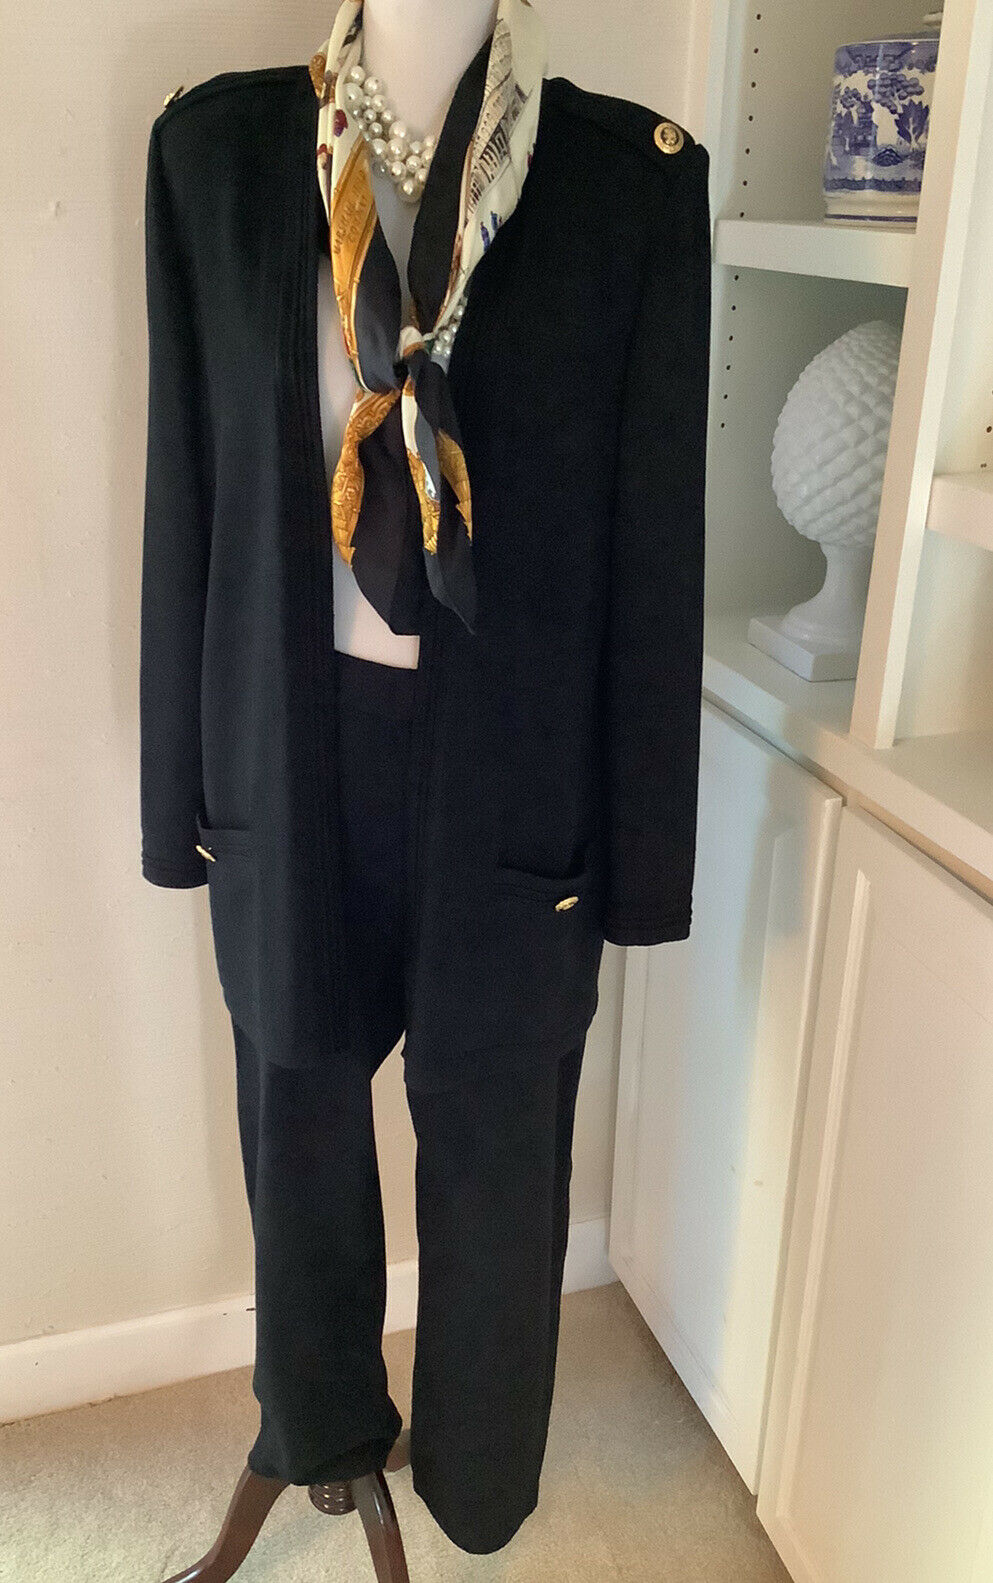 St John Basics Pant Suit, Size Large 12, Black Santana Knit, Pleats, Pockets